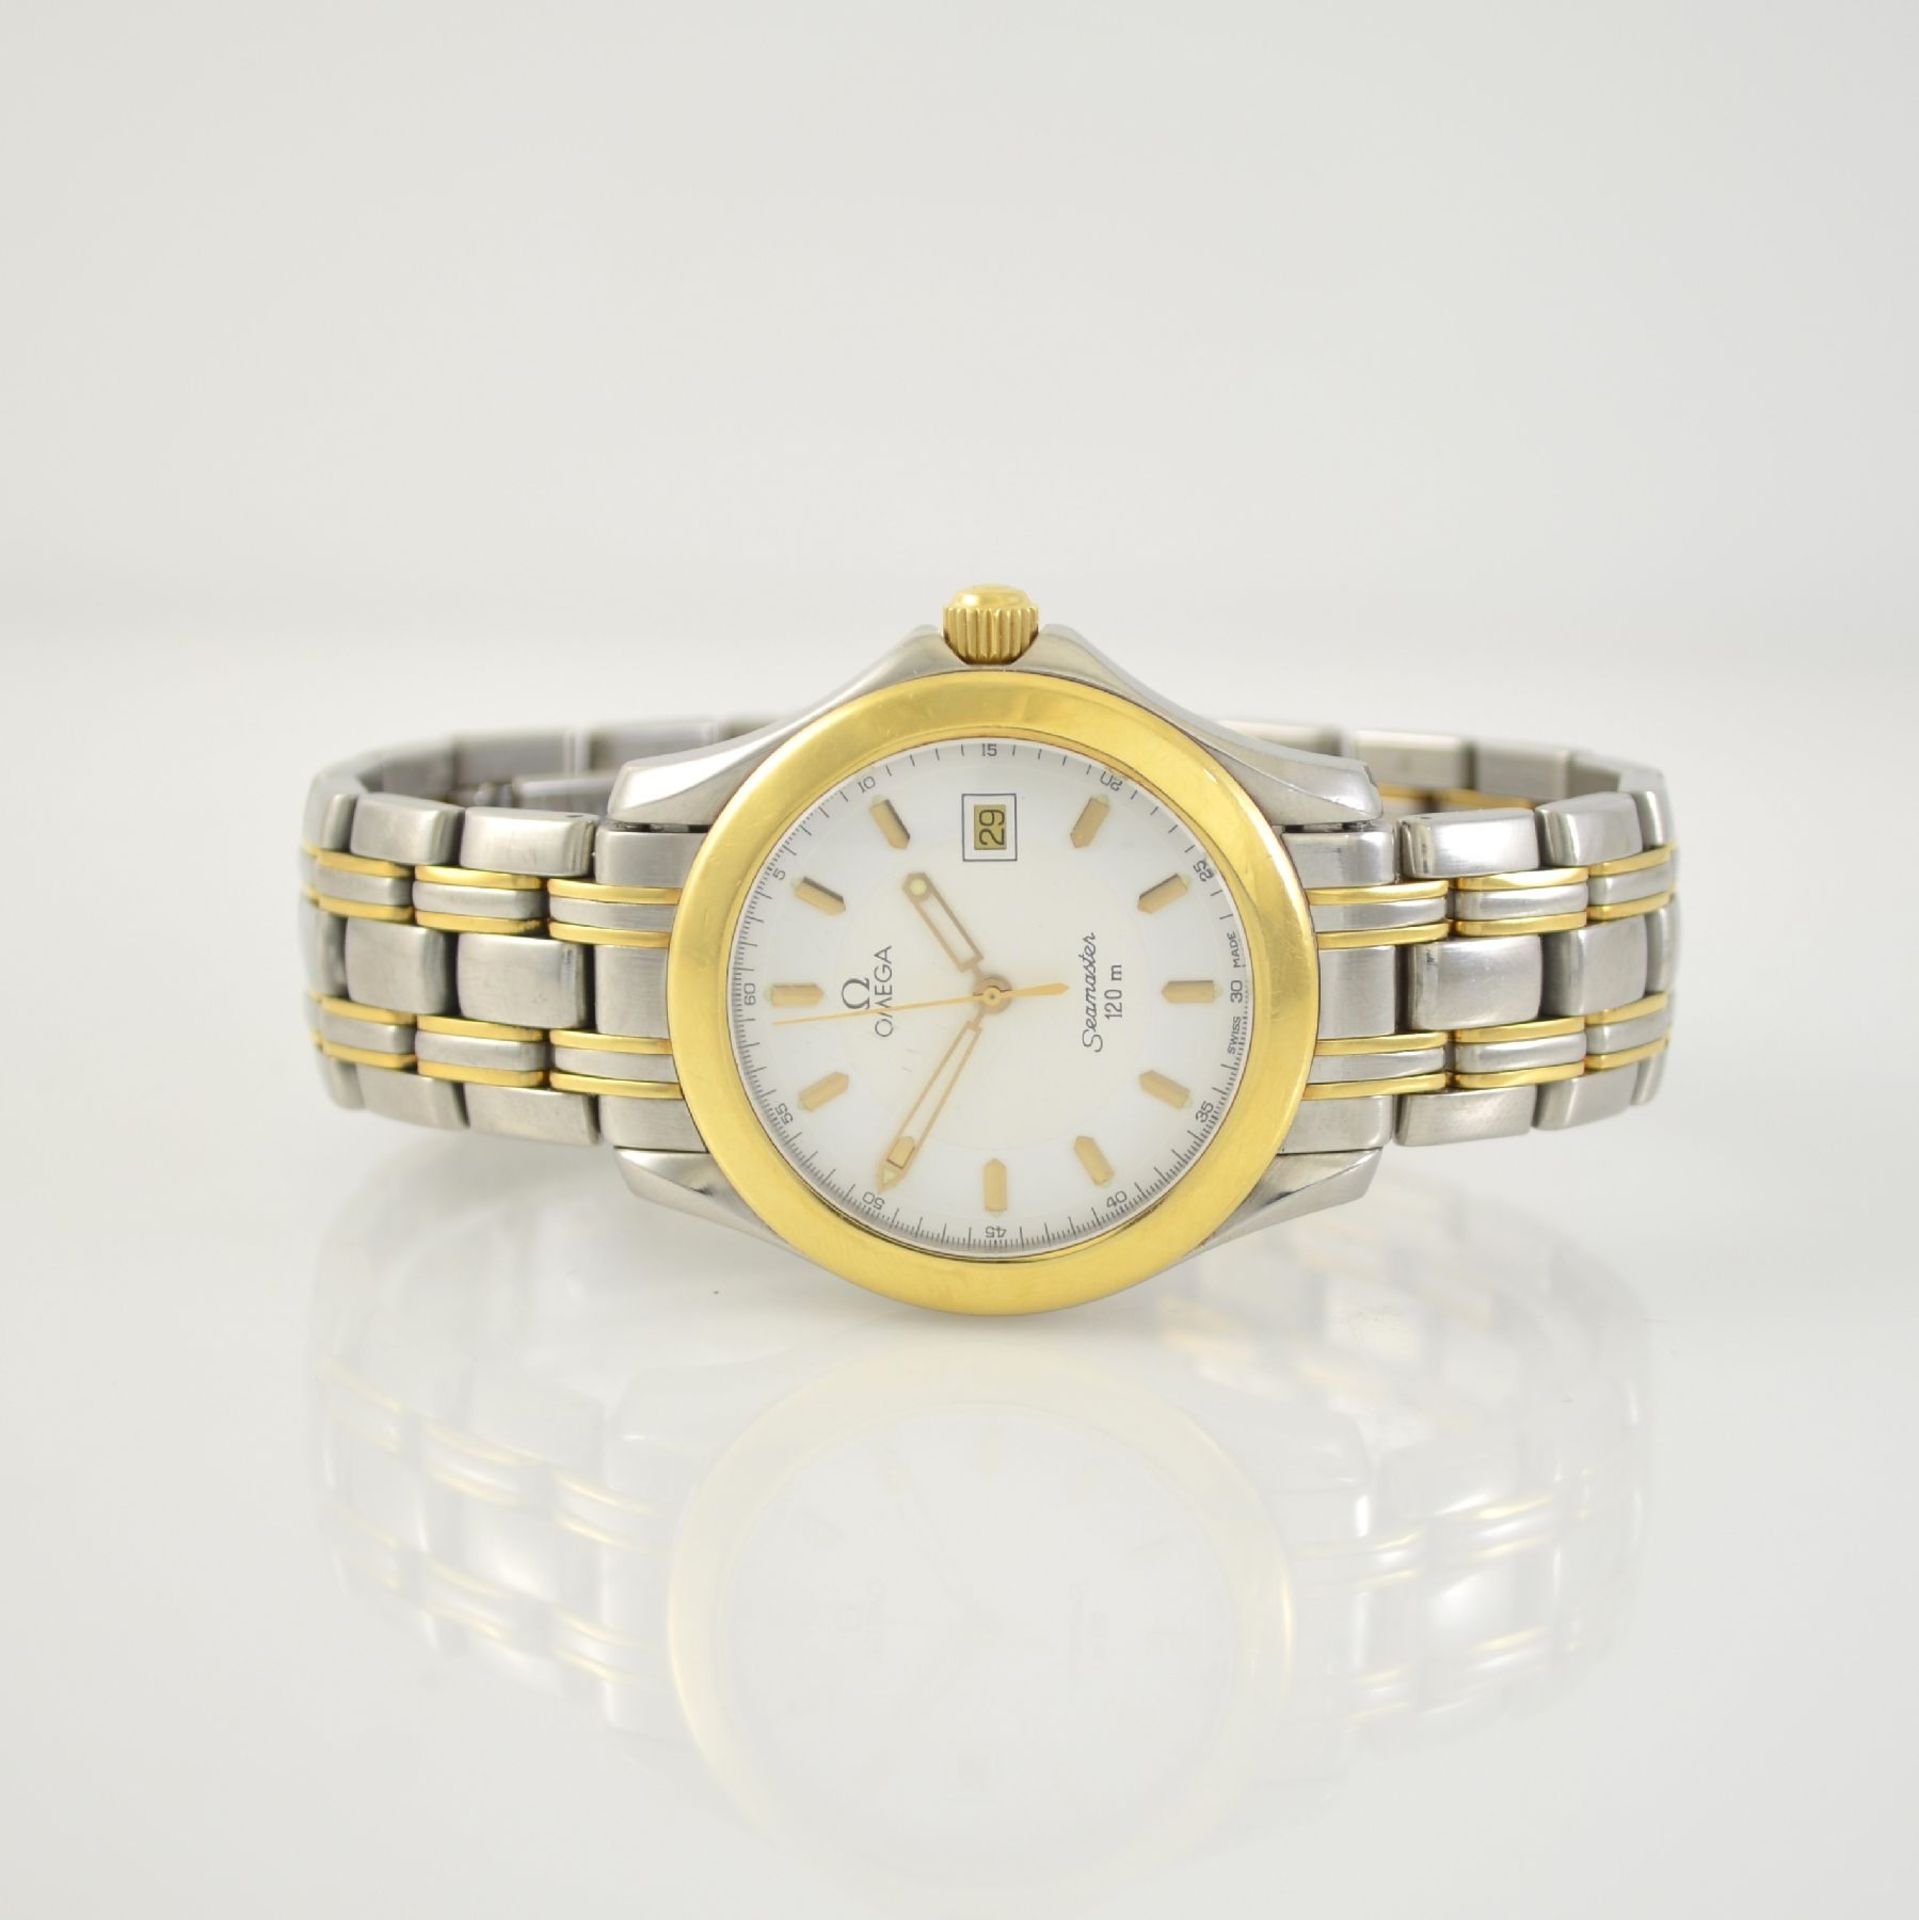 OMEGA gents wristwatch series Seamaster, Switzerland around 1996, 168.1501/196.1501, stainless